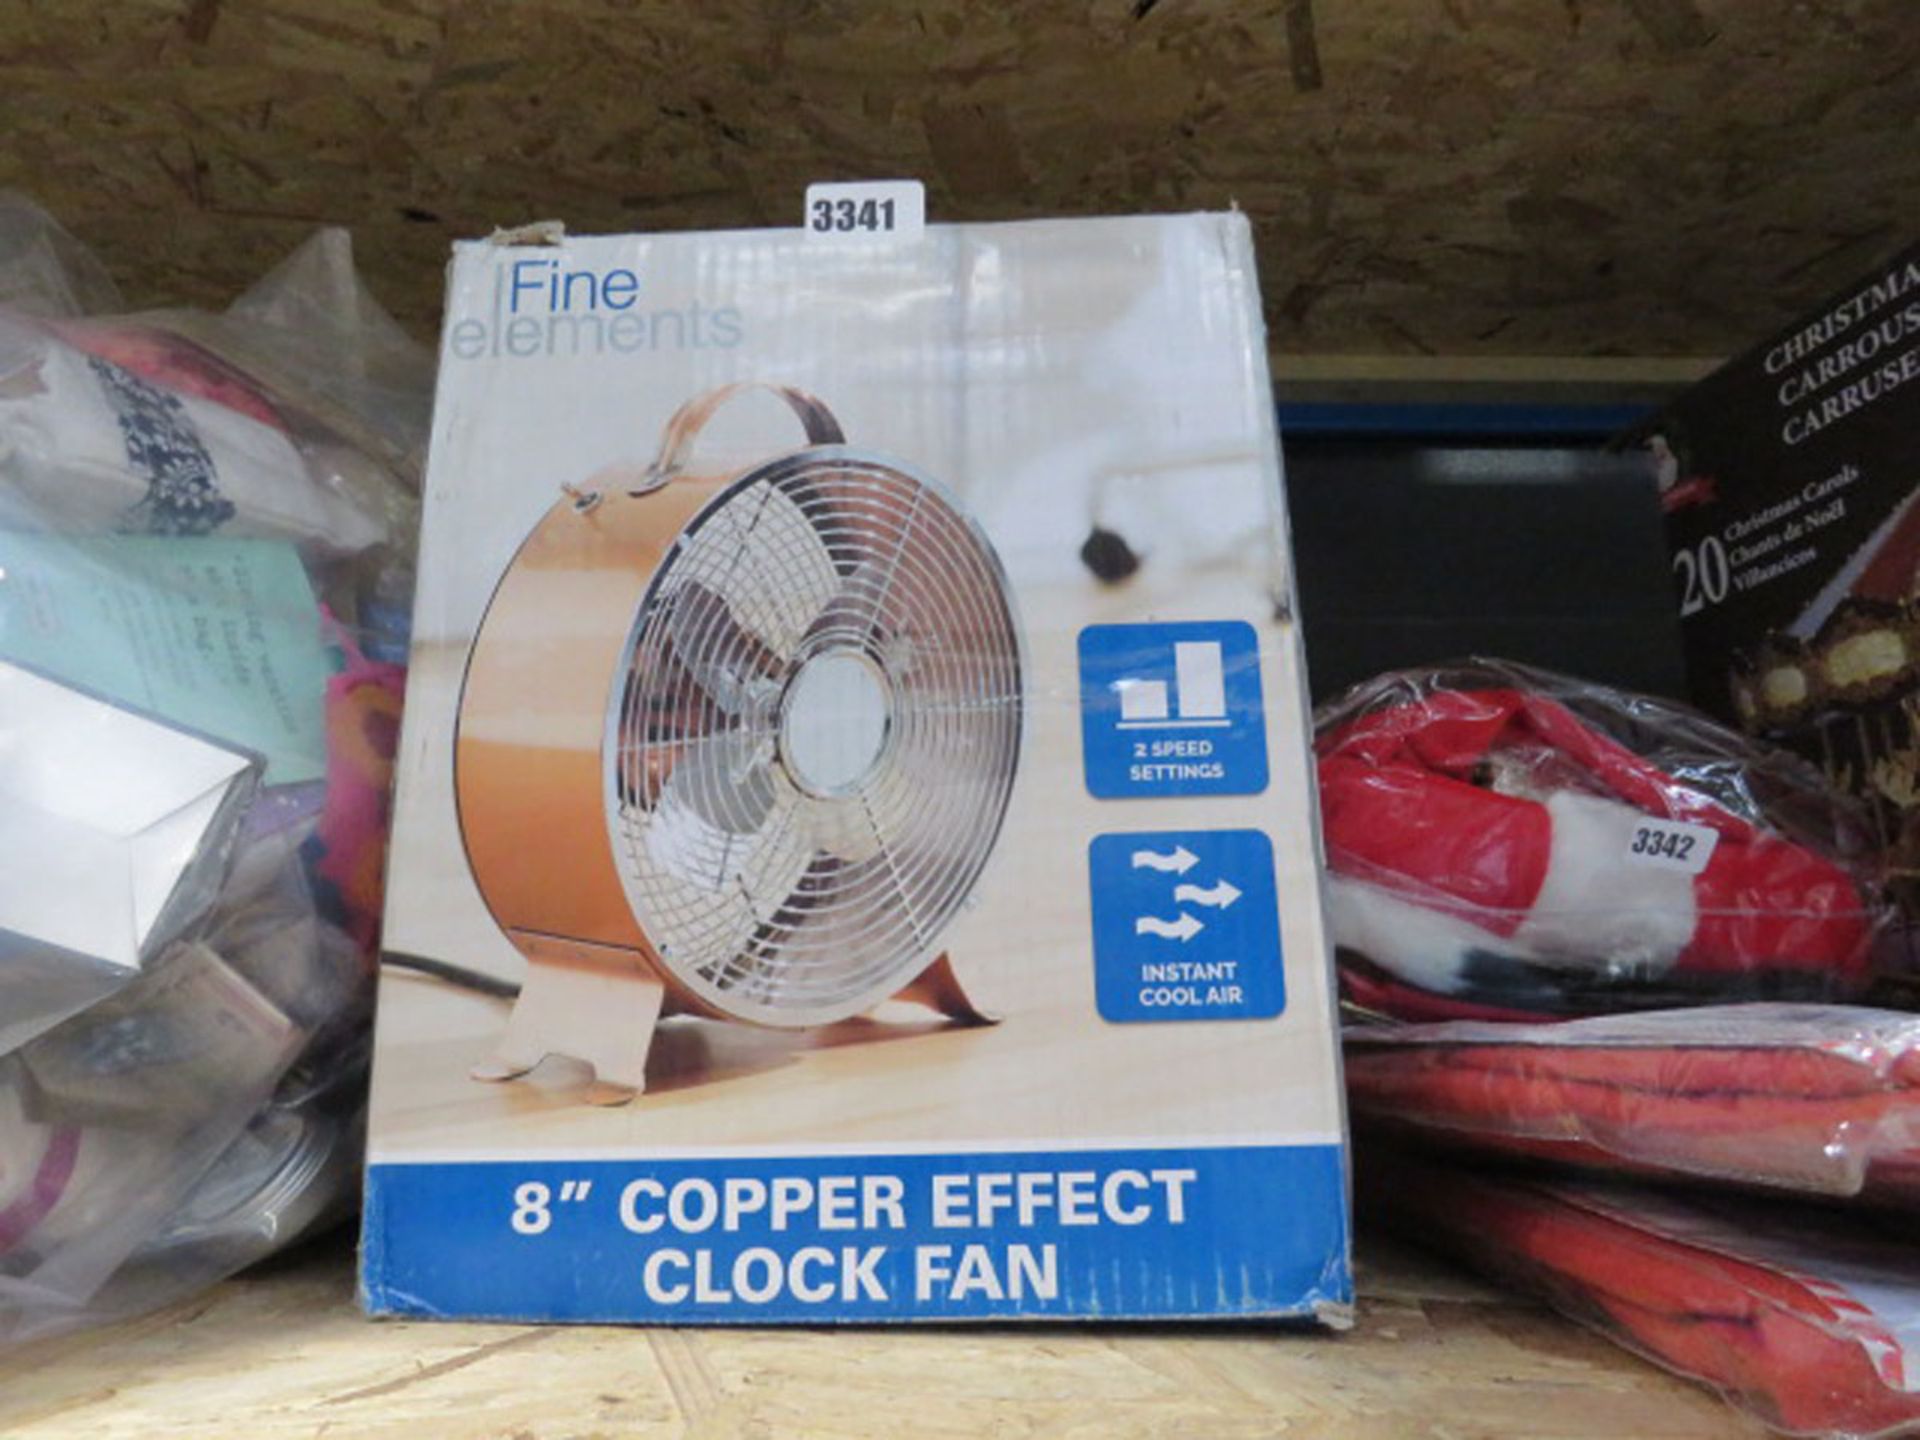 2 Fine Element copper effect fans